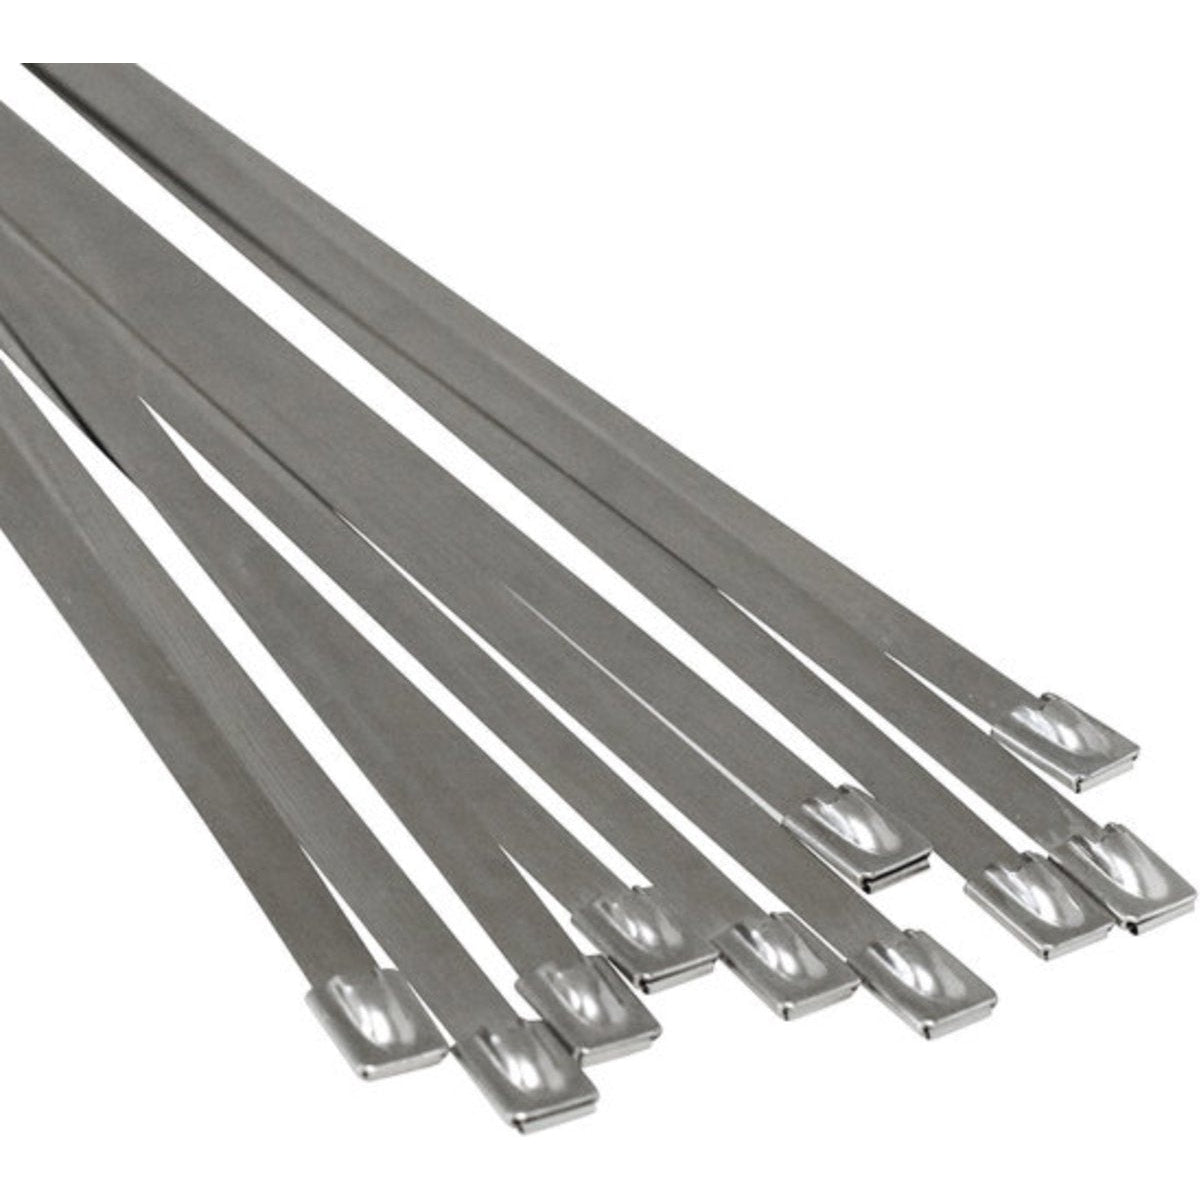 Tie wraps - RVS - 24 stuks - Lengte: 300 mm - Breedte: 4.6 mm - Roestvrij staal - Tie wrap - Kabelbinder - Tie-wrap